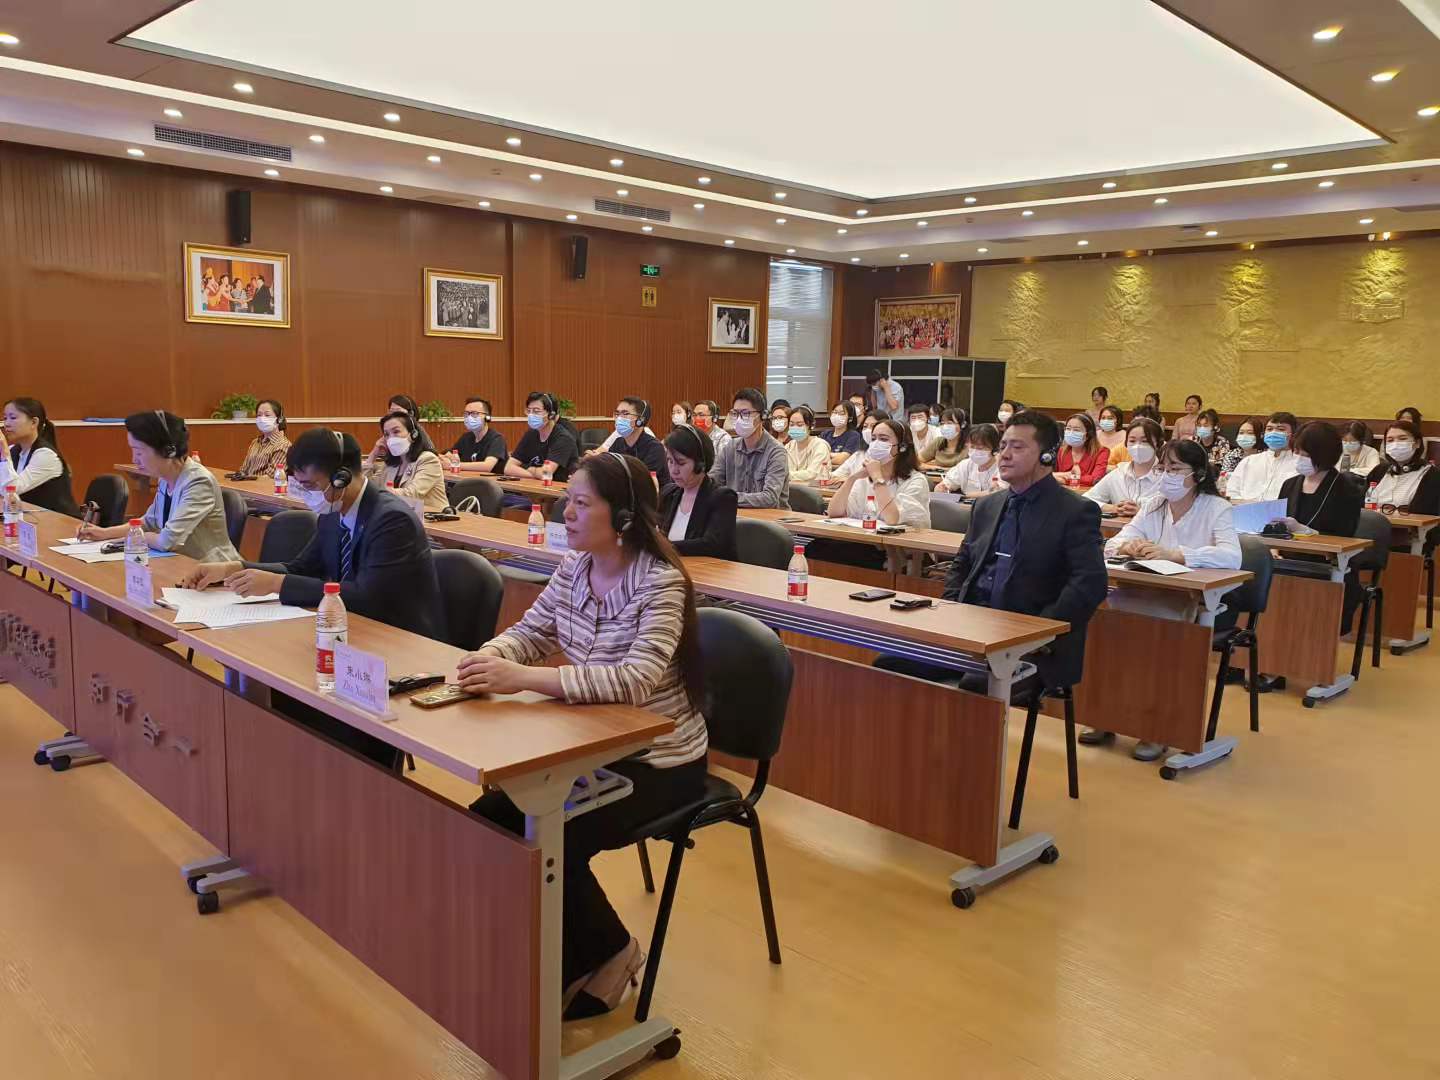 8 сентября 2021 года Посол Кыргызской Республики в КНР К.Бактыгулова провела встречу с ректором Центрального университета национальностей Китая Гуо Гуаншэнем.